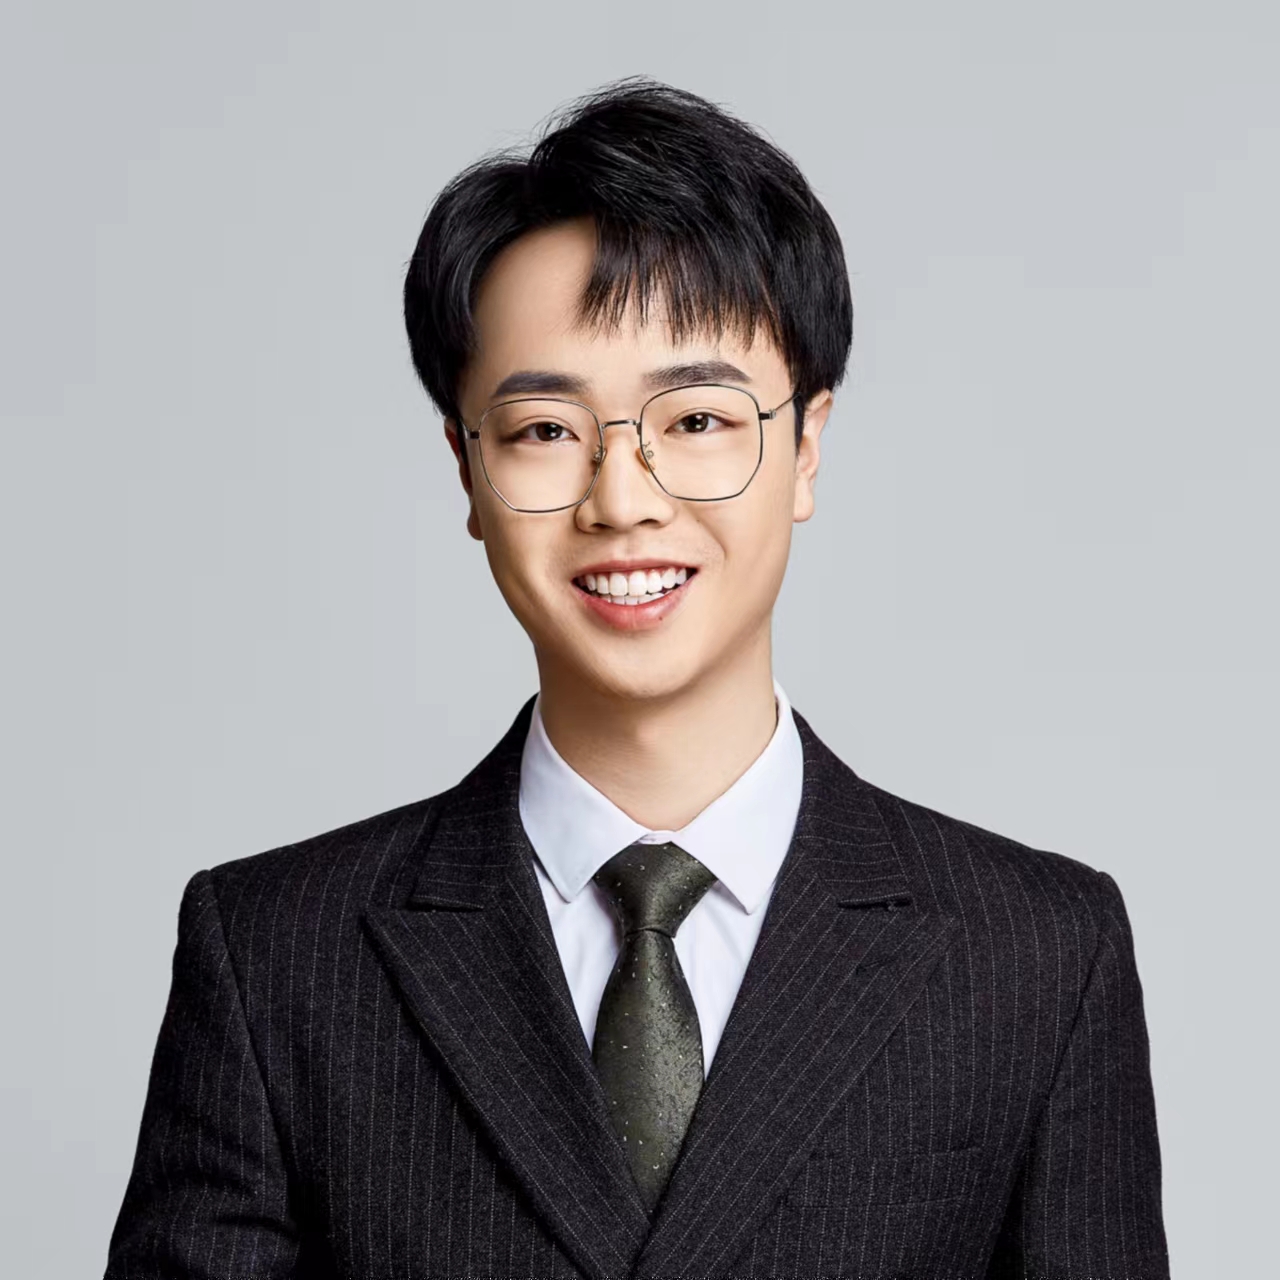 Image of Jiachen Zhou wearing a business suit